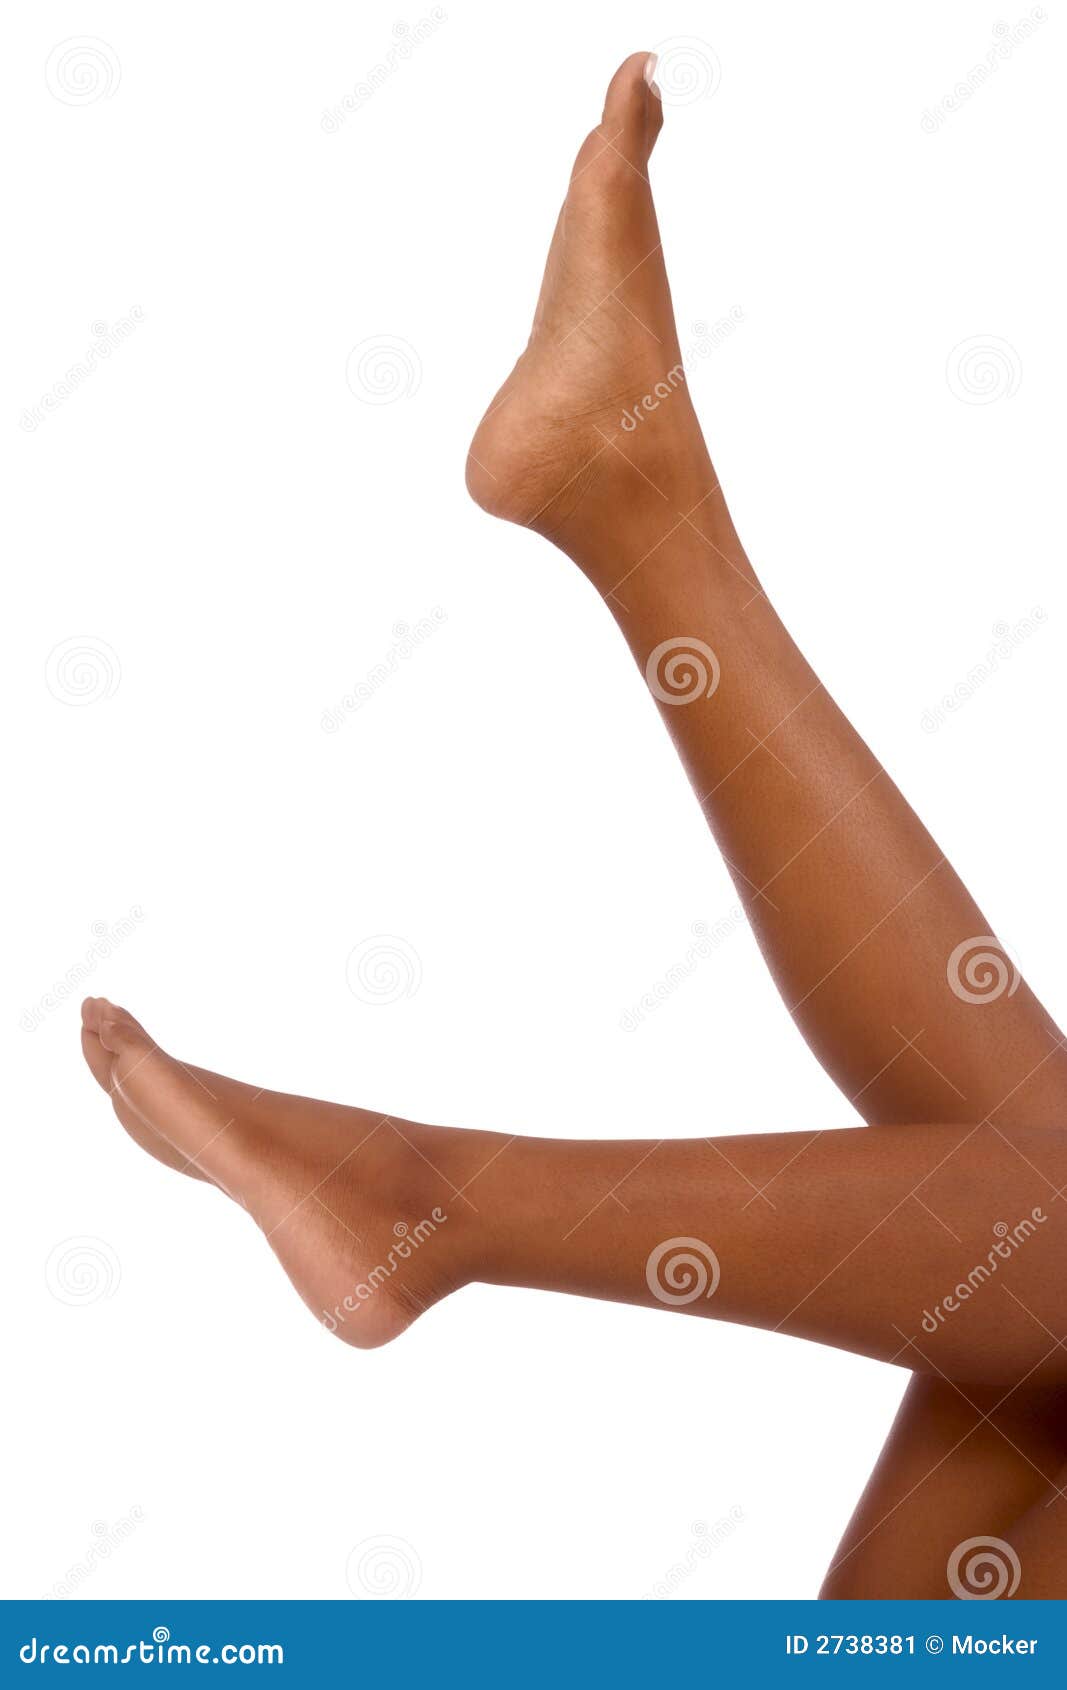 legs-african-american-woman-2738381.jpg